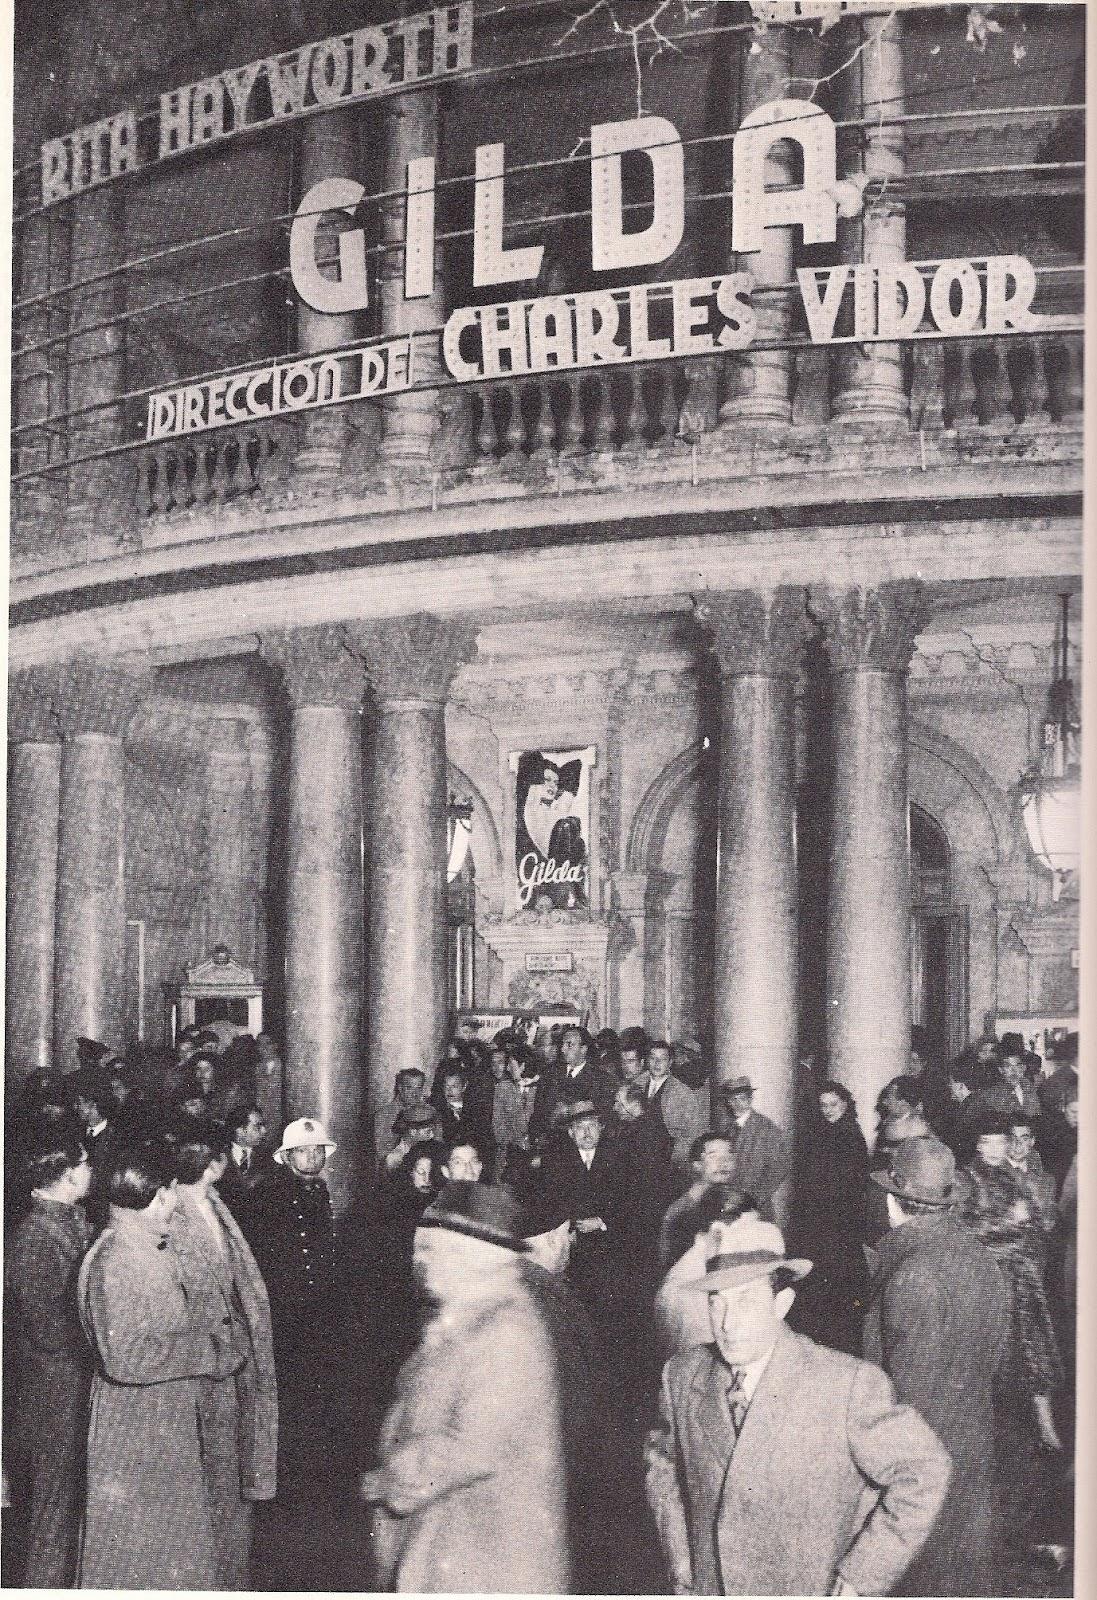 BARCELONA, EL DÍA 22 DE DICIEMBRE DE 1947, EN EL CINE COLISEUM, SE ESTRENÓ GILDA...16-11-2013...